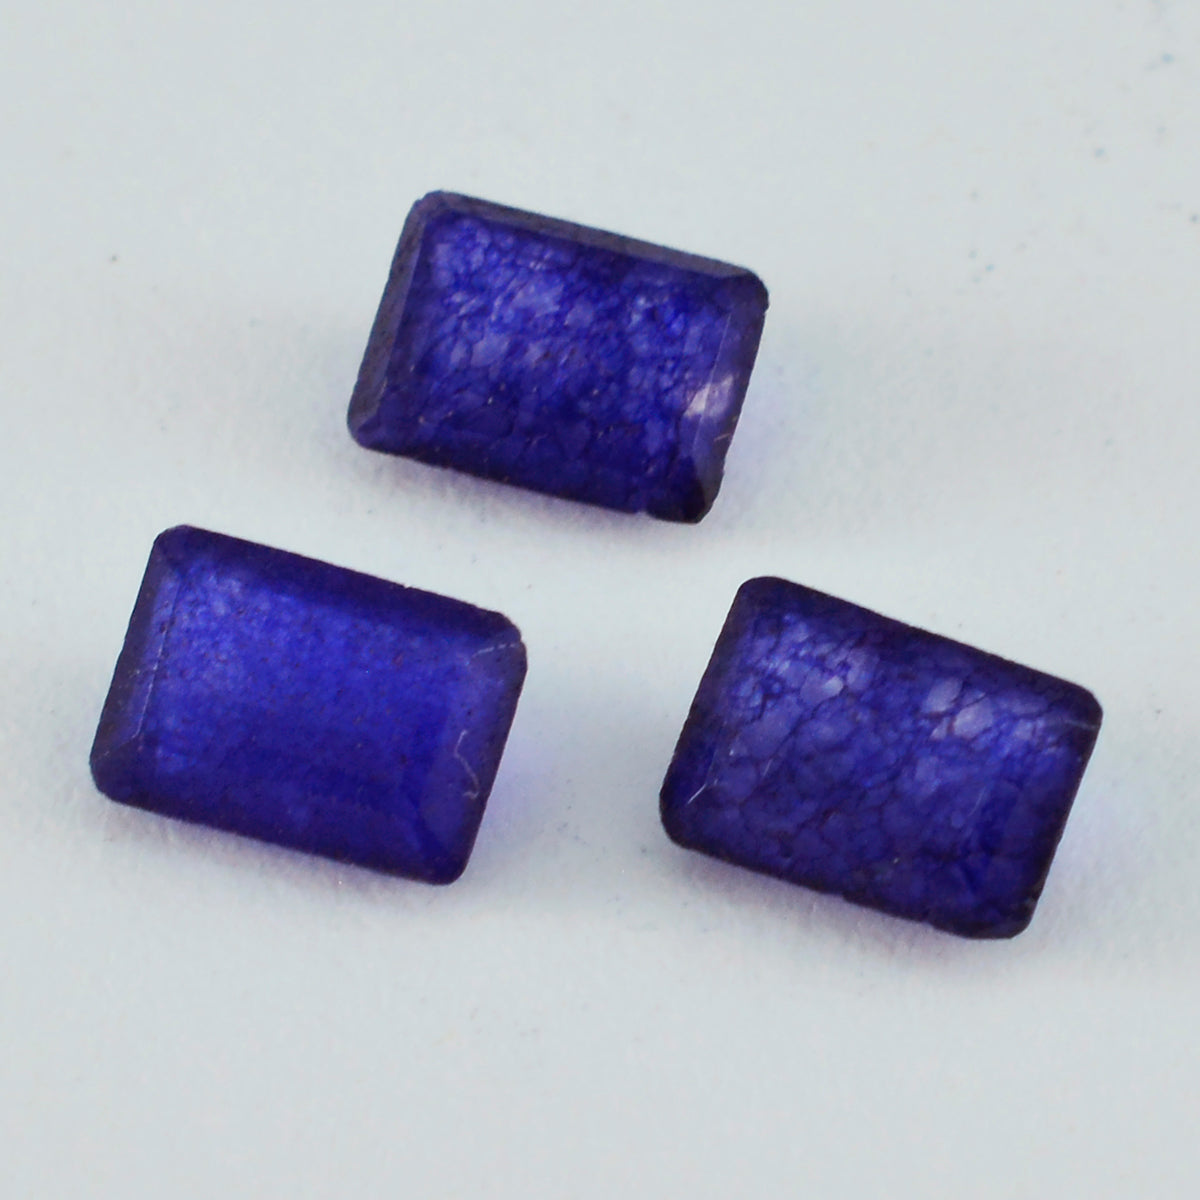 Riyogems 1 Stück natürlicher blauer Jaspis, facettiert, 7 x 9 mm, achteckige Form, schön aussehender Qualitäts-Edelstein